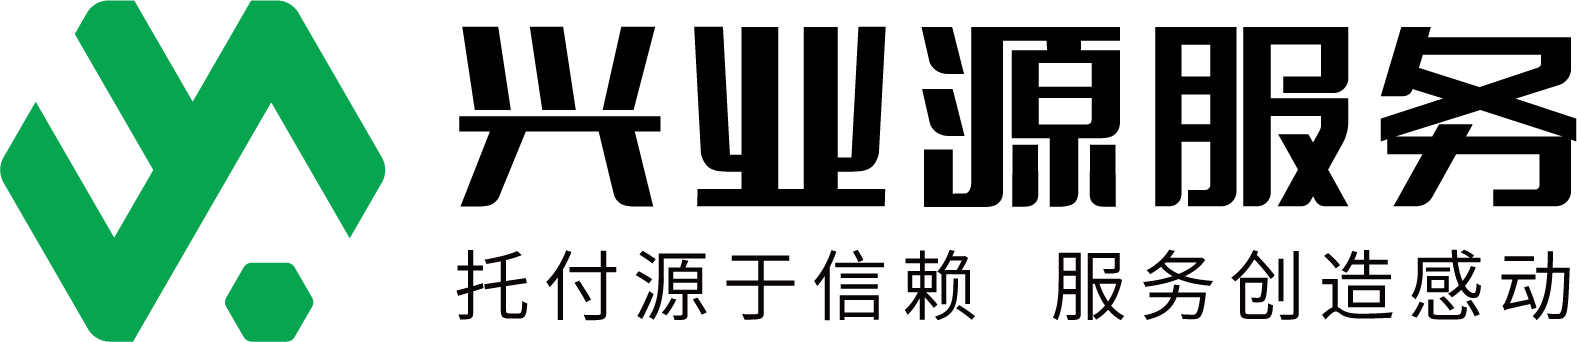 兴业源原色中文logo.png